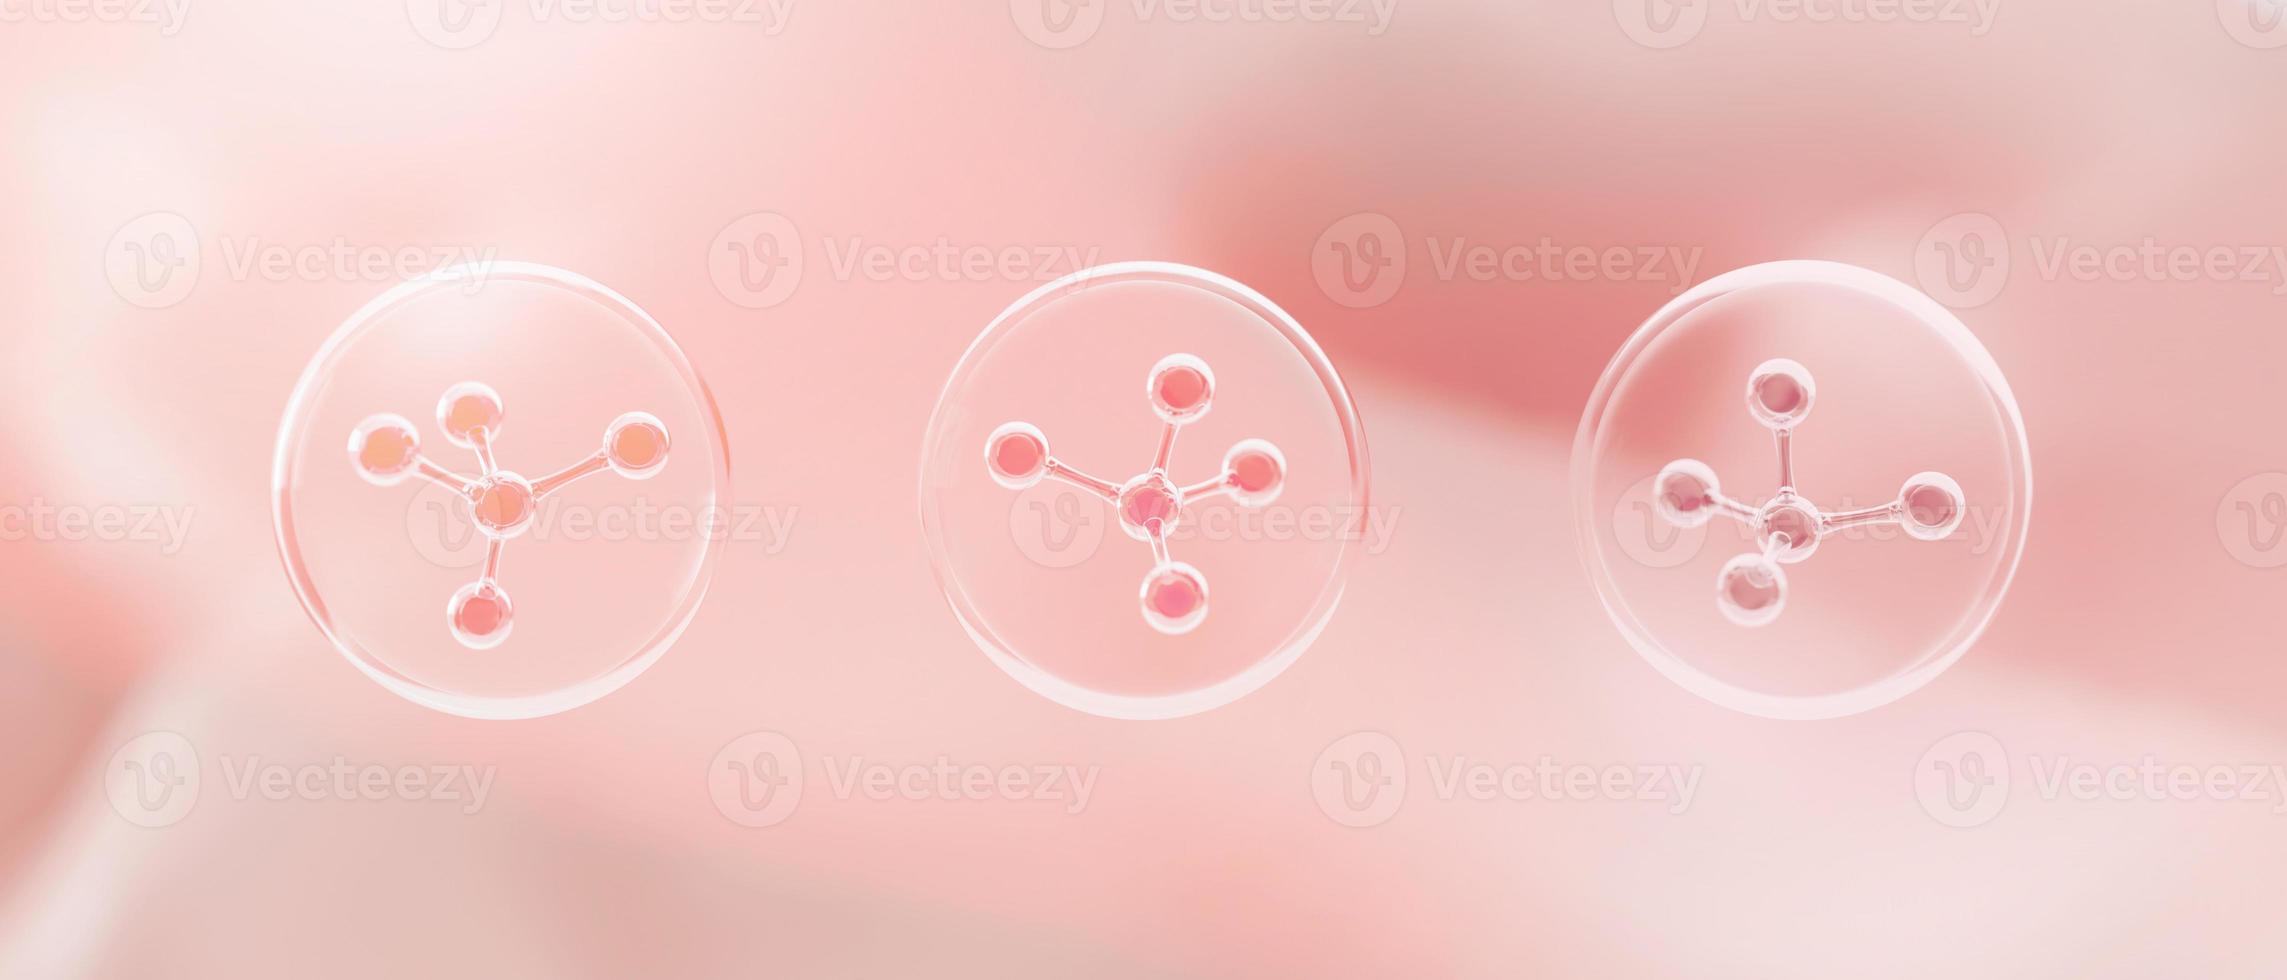 structure des atomes de la molécule à l'intérieur des bulles sur fond de peau rose. soins de la peau cosmétiques ou traitement et solution de la peau humaine. rendu 3d photo